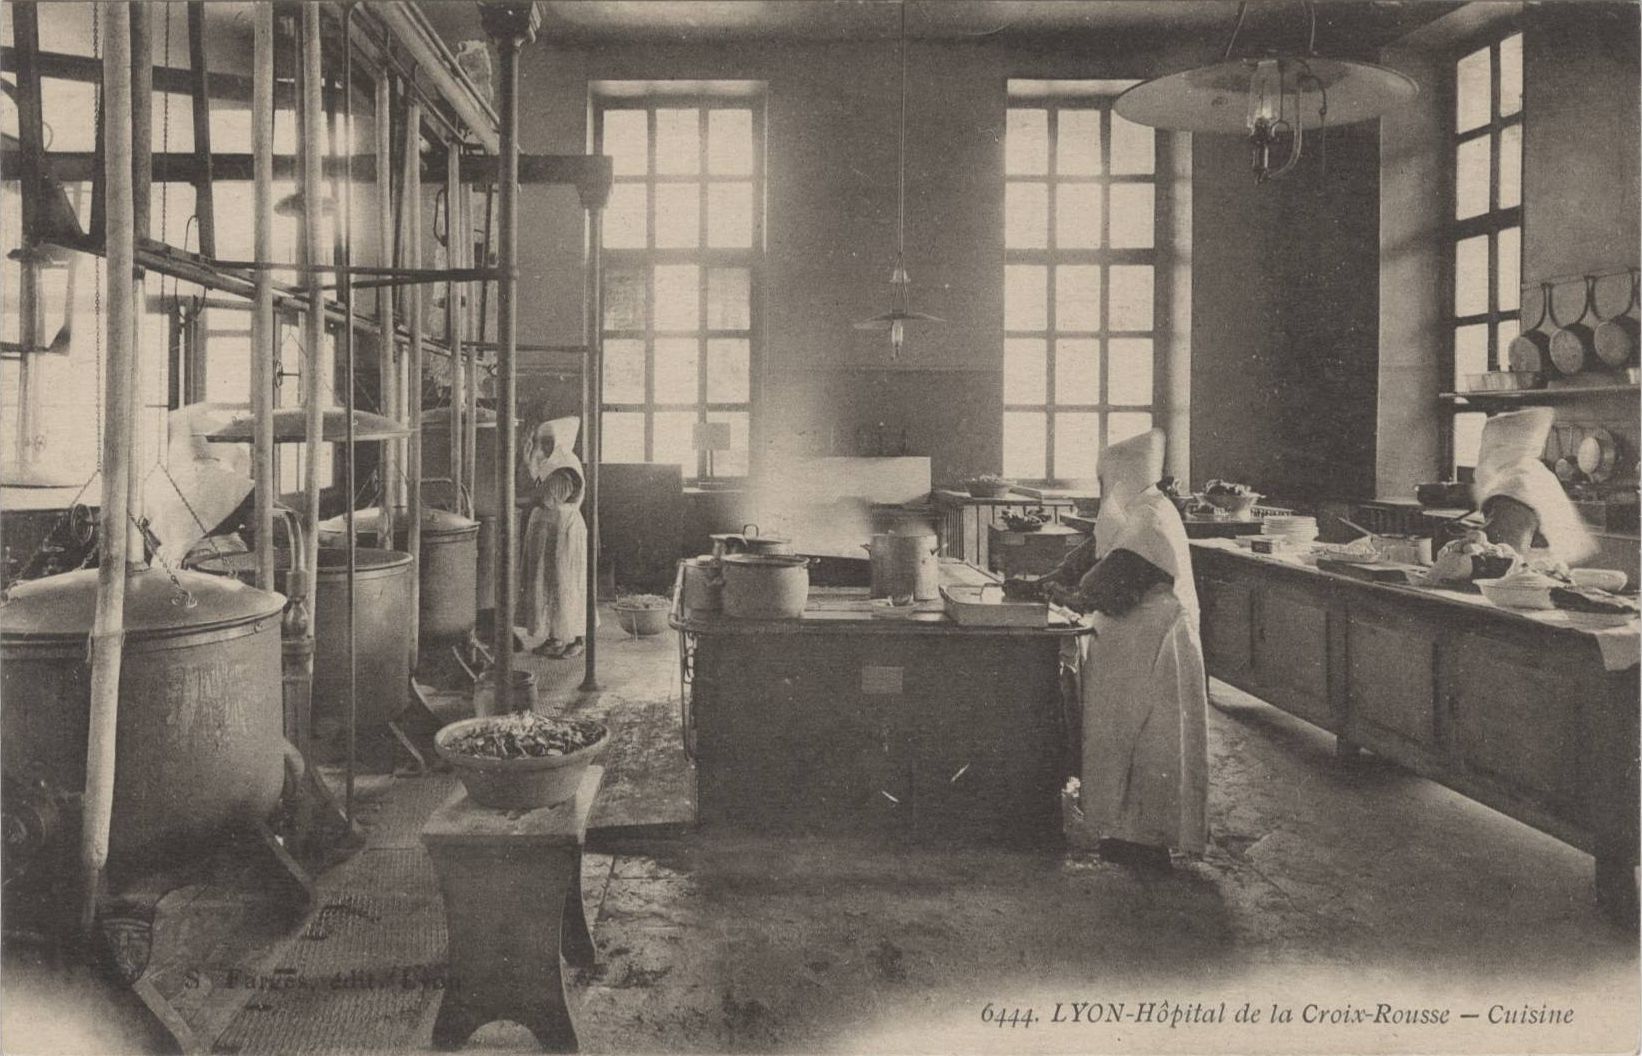 Lyon - Hôpital de la Croix-Rousse, cuisine : carte postale NB (vers 1910, cote : 4FI/3538)